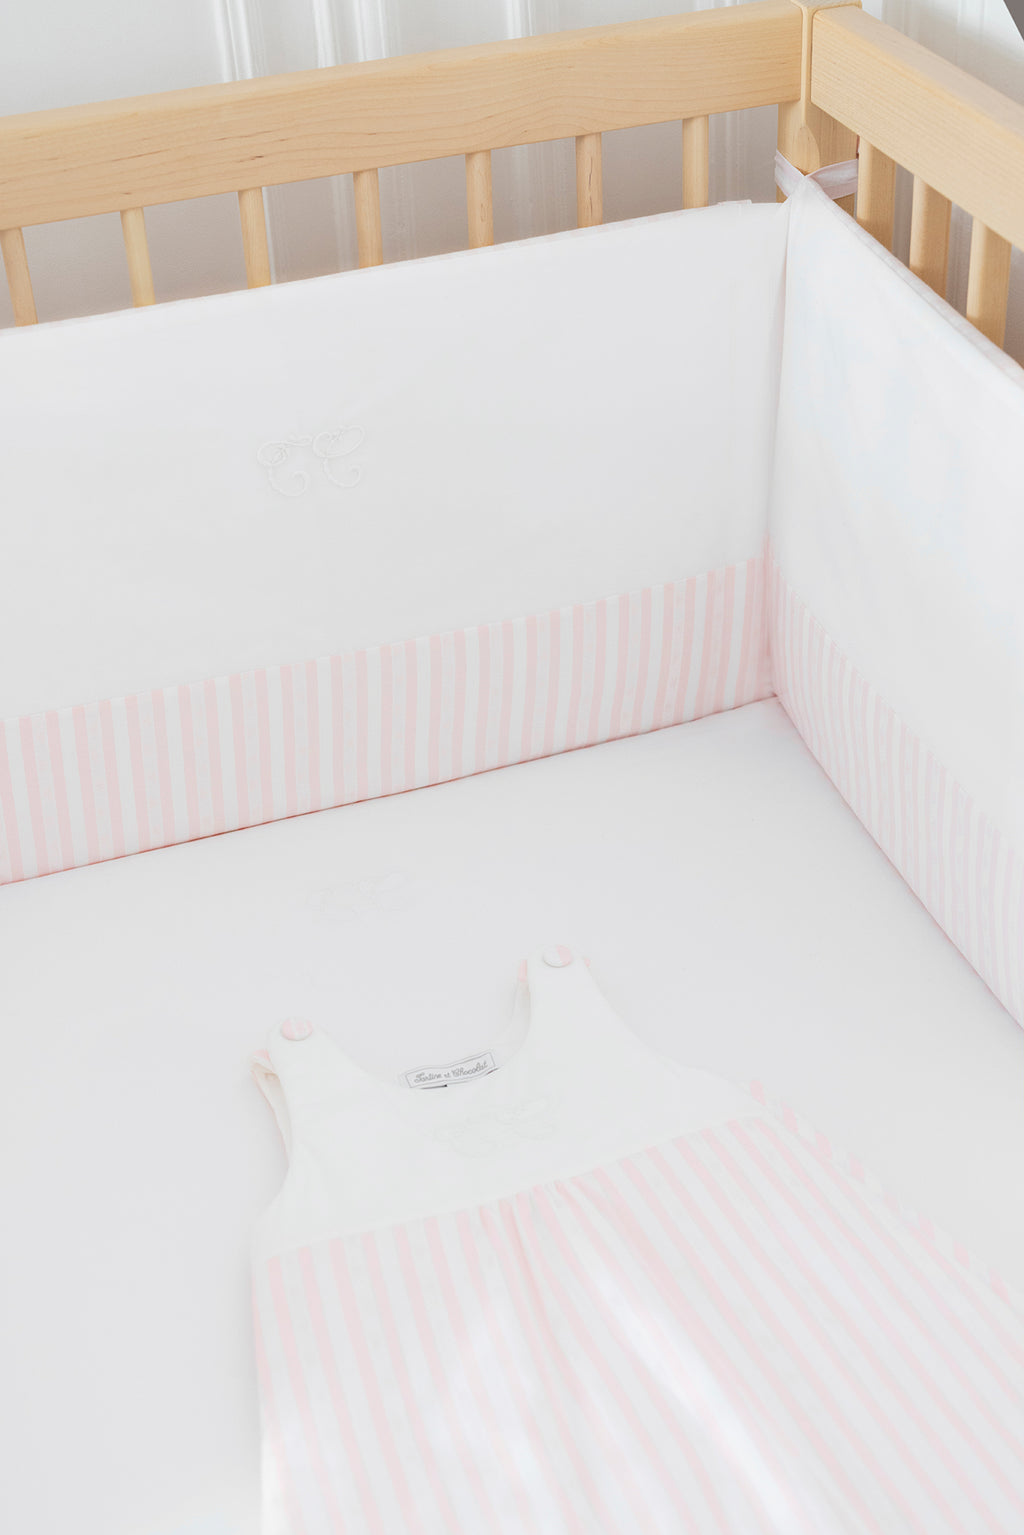 Parachoques de cama - Garda Rosa pálido